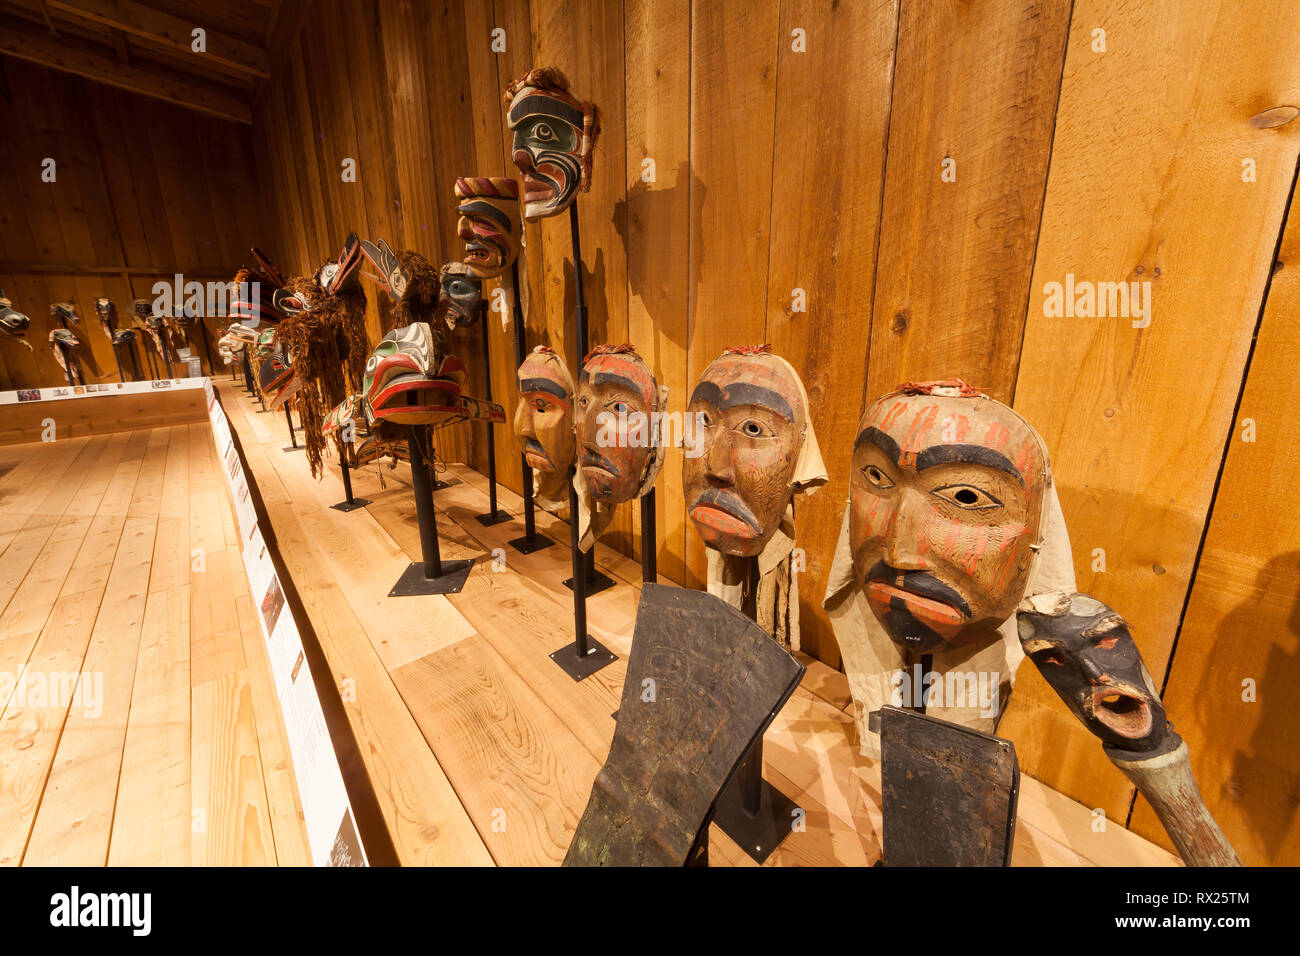 Die Kultur der First Nations wird im U'mista Cultural Centre lebendig, wo unbezahlbare Kwakwaka'wakw-Masken und kulturelle Ikonen ausgestellt sind. Alert Bay, Cormorant Island, British Columbia, Kanada Stockfoto